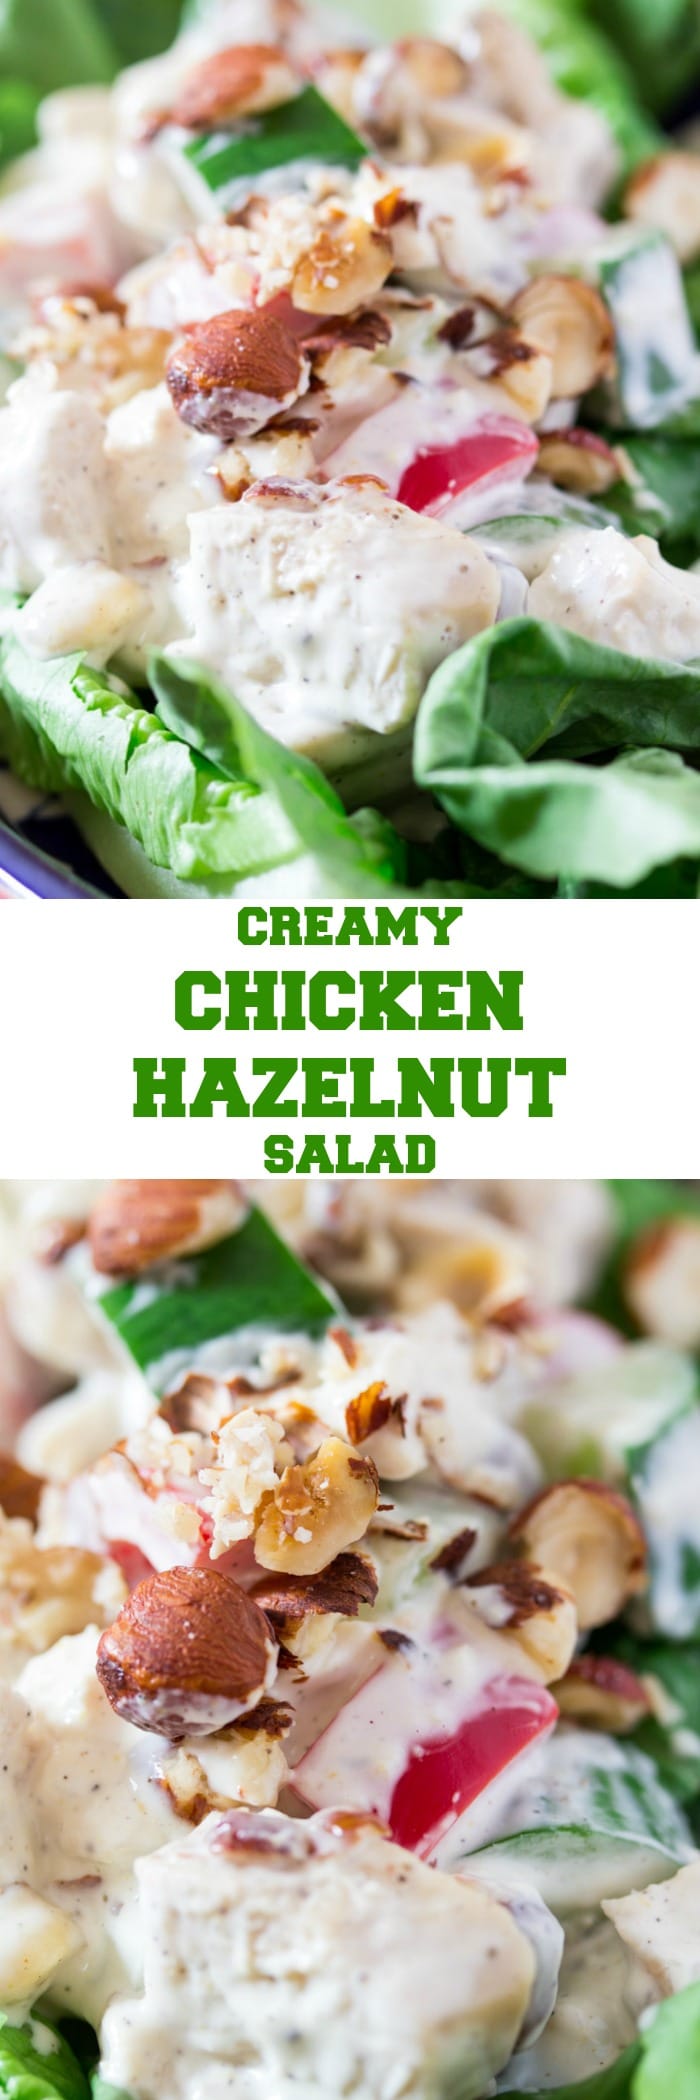 Creamy Chicken Hazelnut Salad